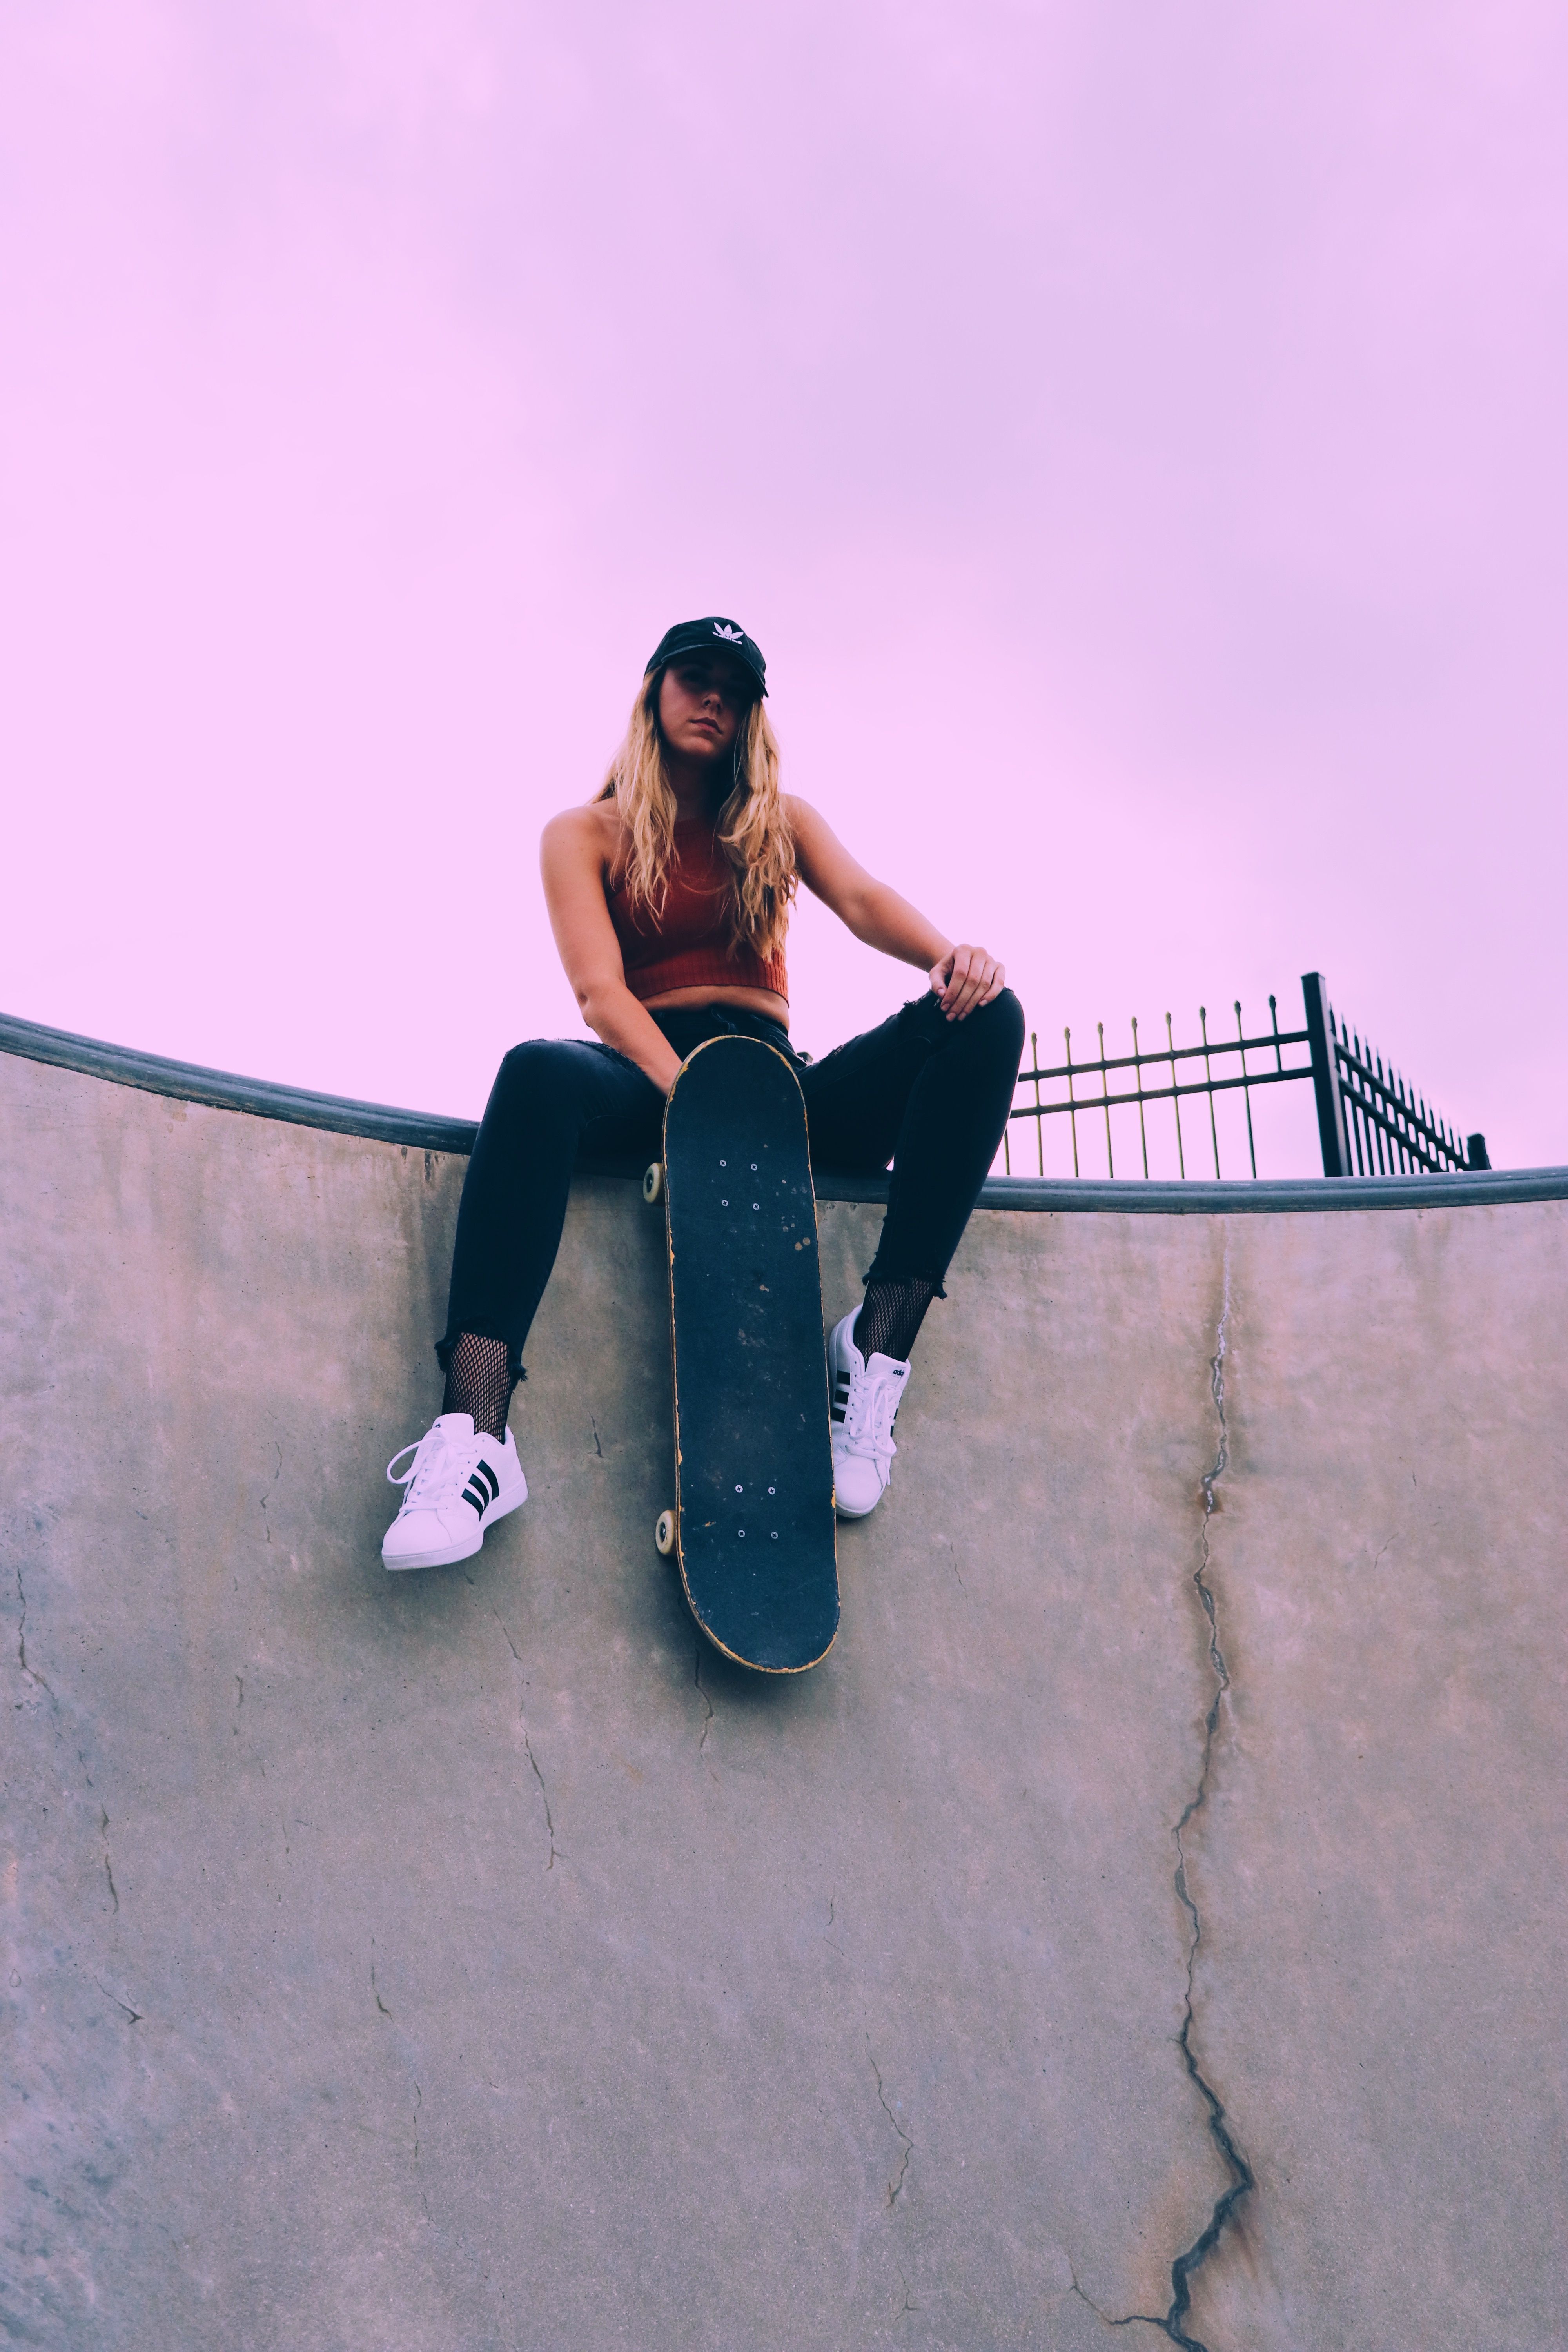 Skateboard Wallpaper Girl